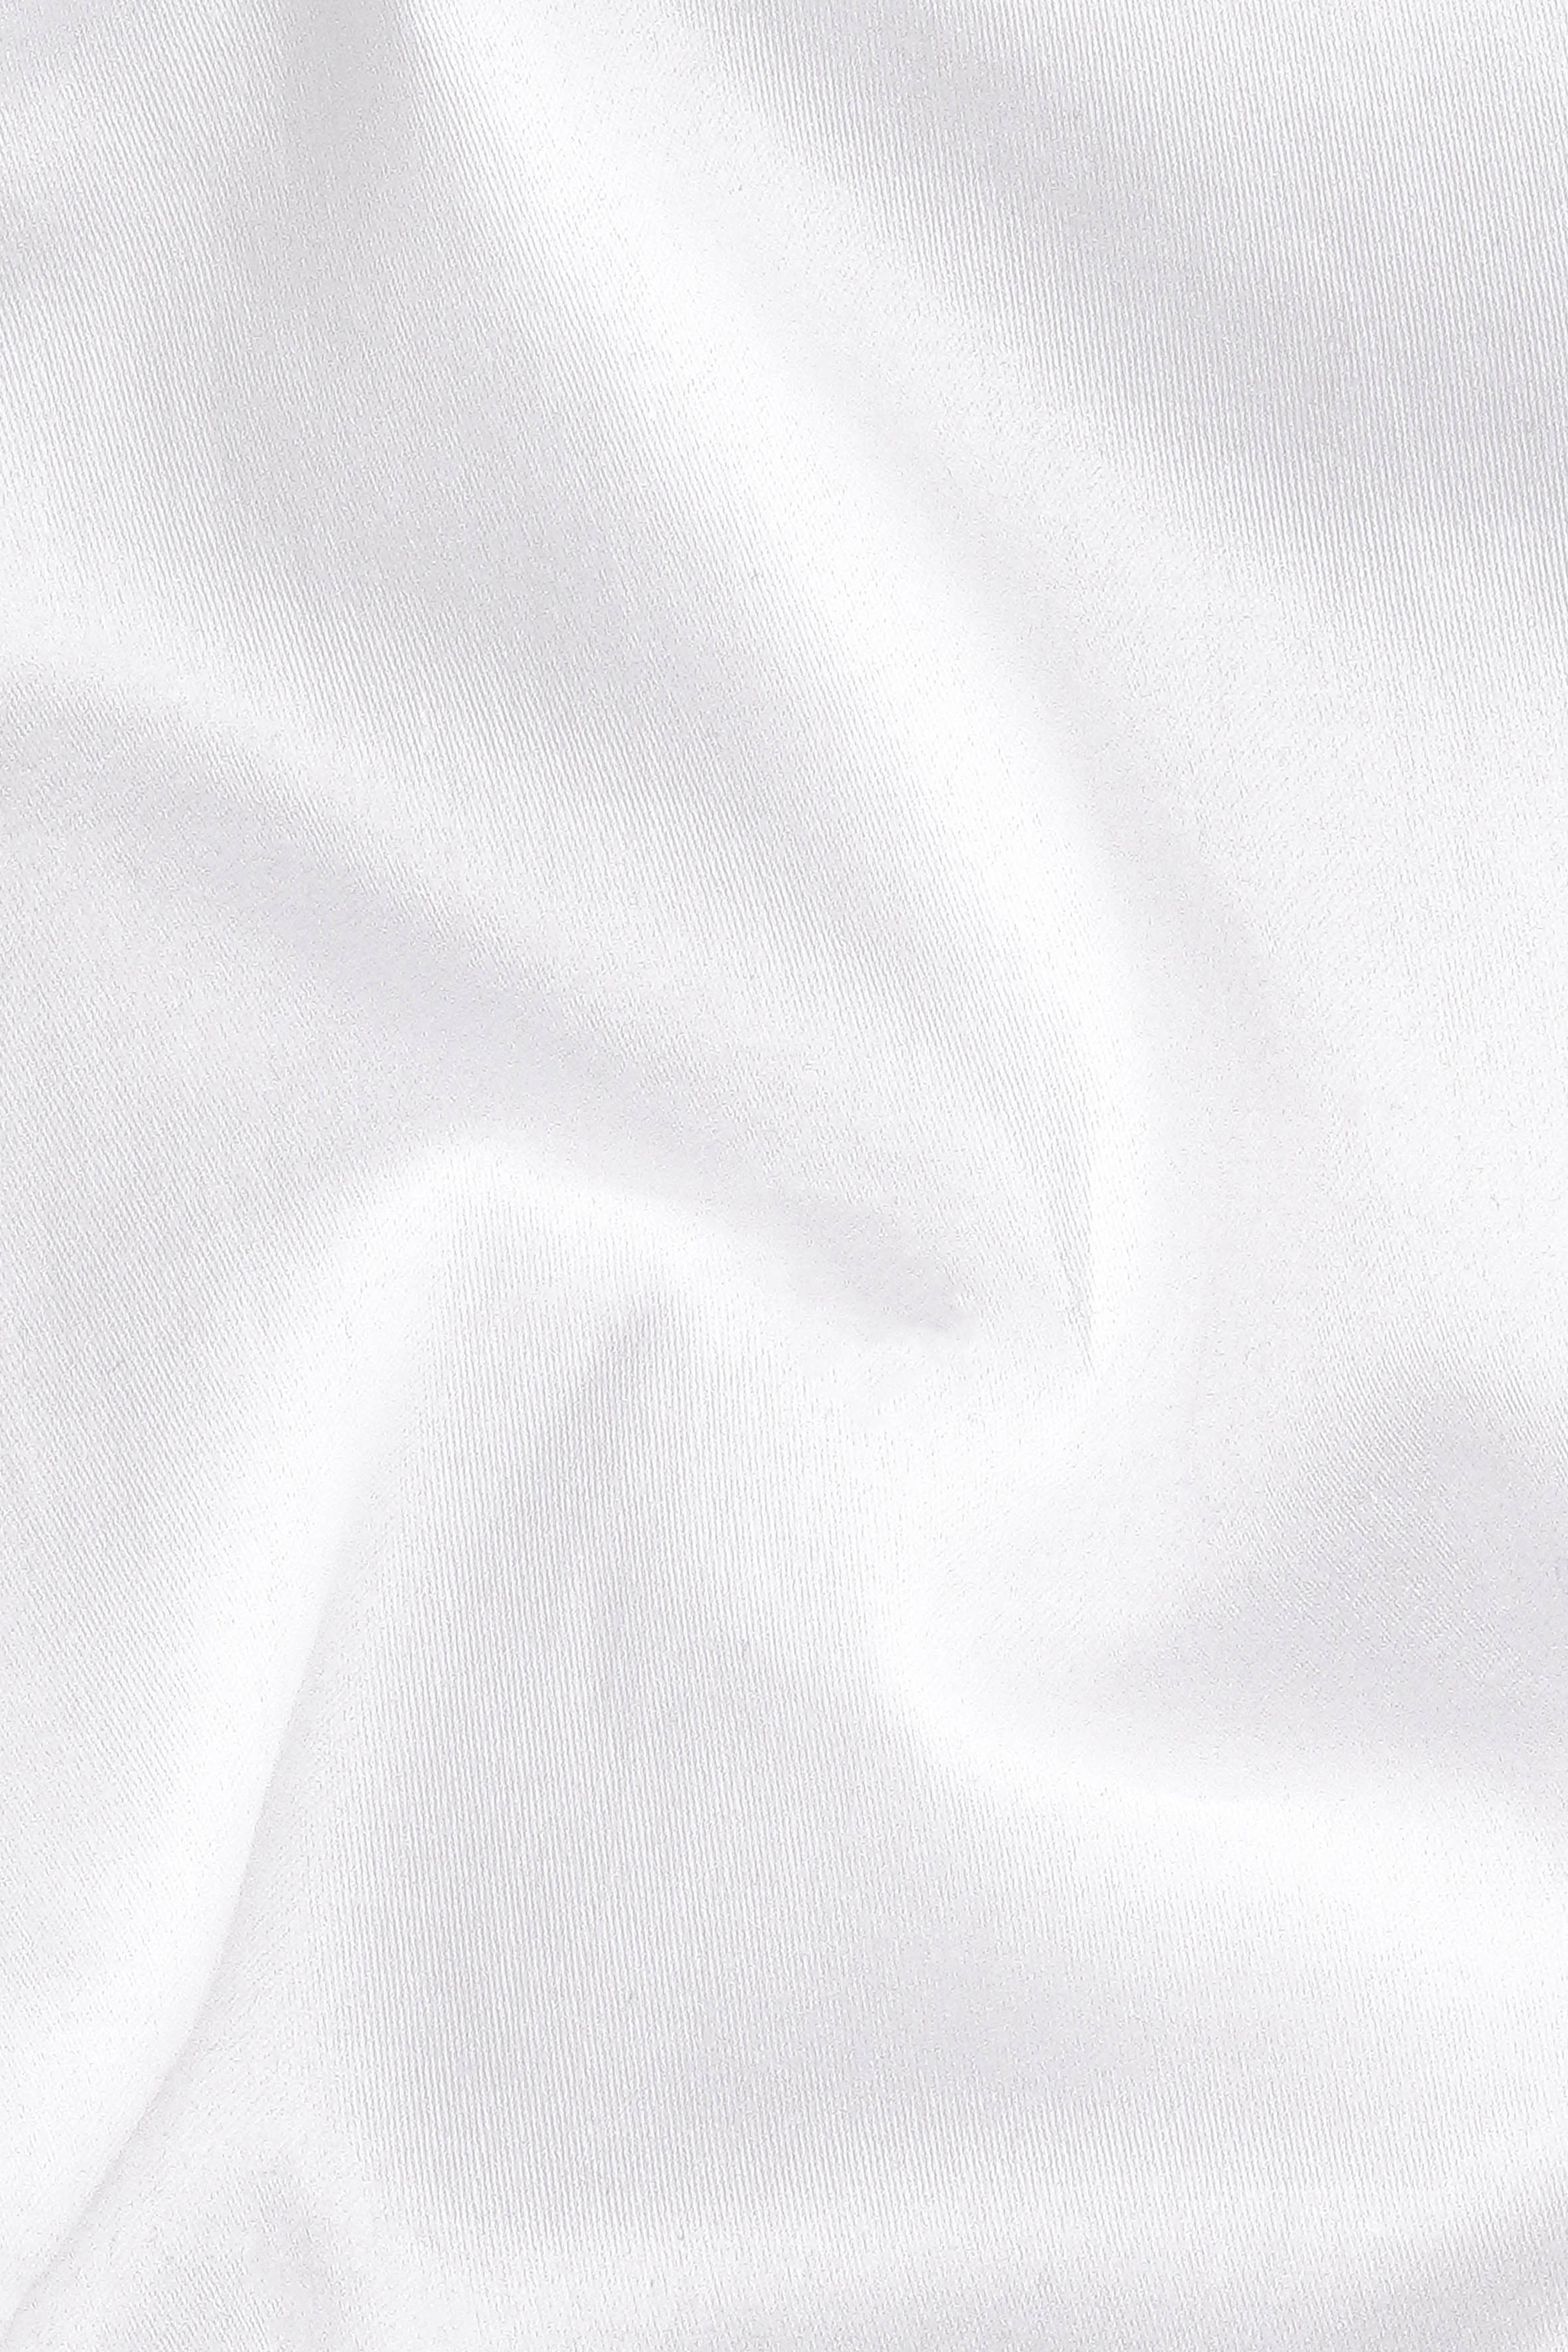 Bright White Subtle Sheen Super Soft Premium Cotton Kurta Set